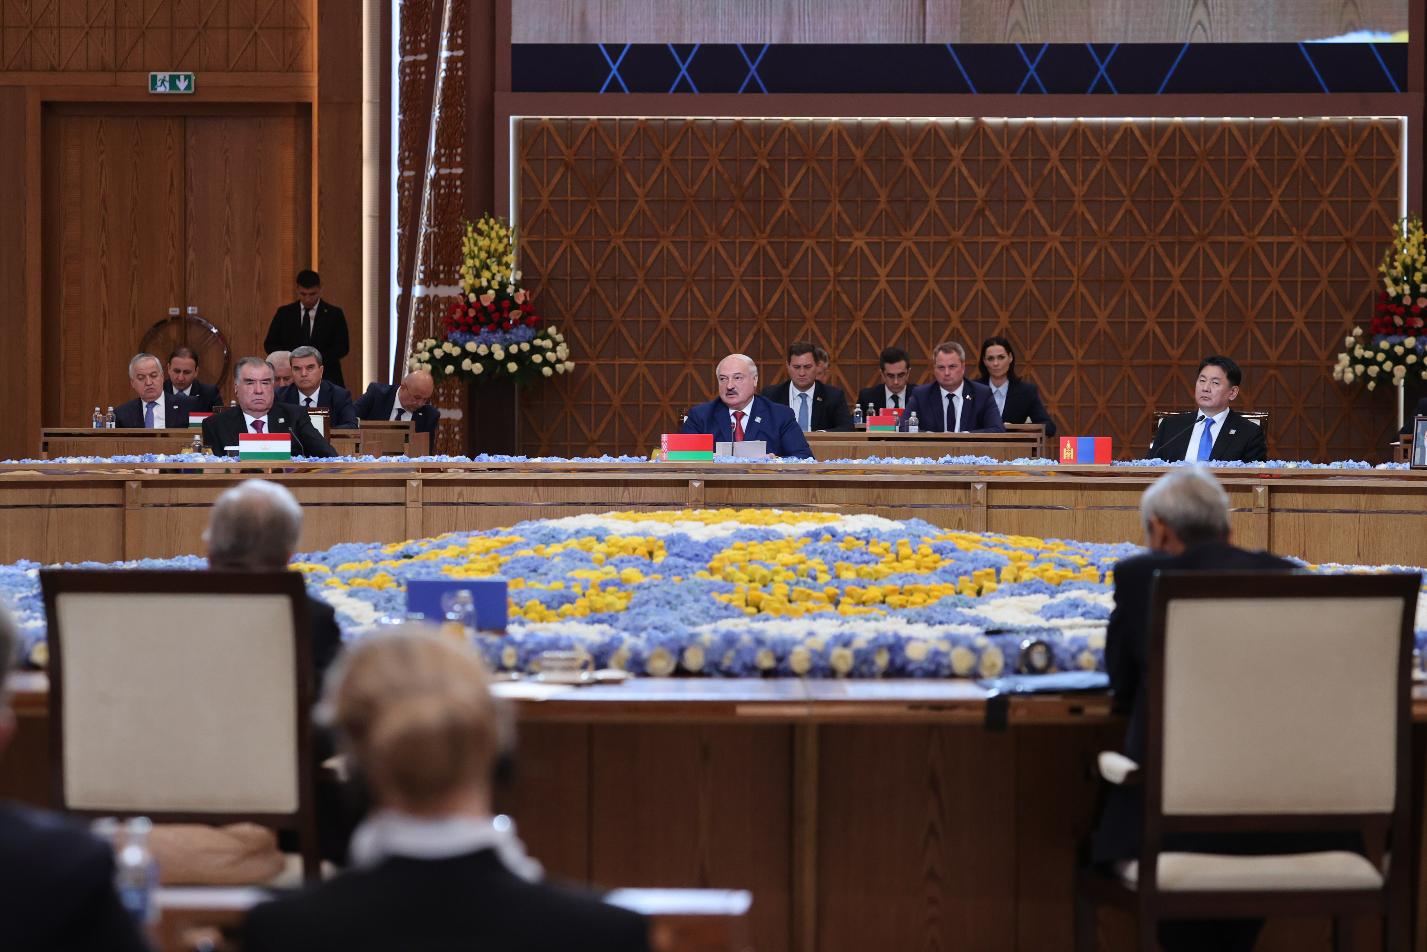 Лукашенко на встрече "ШОС плюс" : наилучший ответ на вызовы - наше единство 